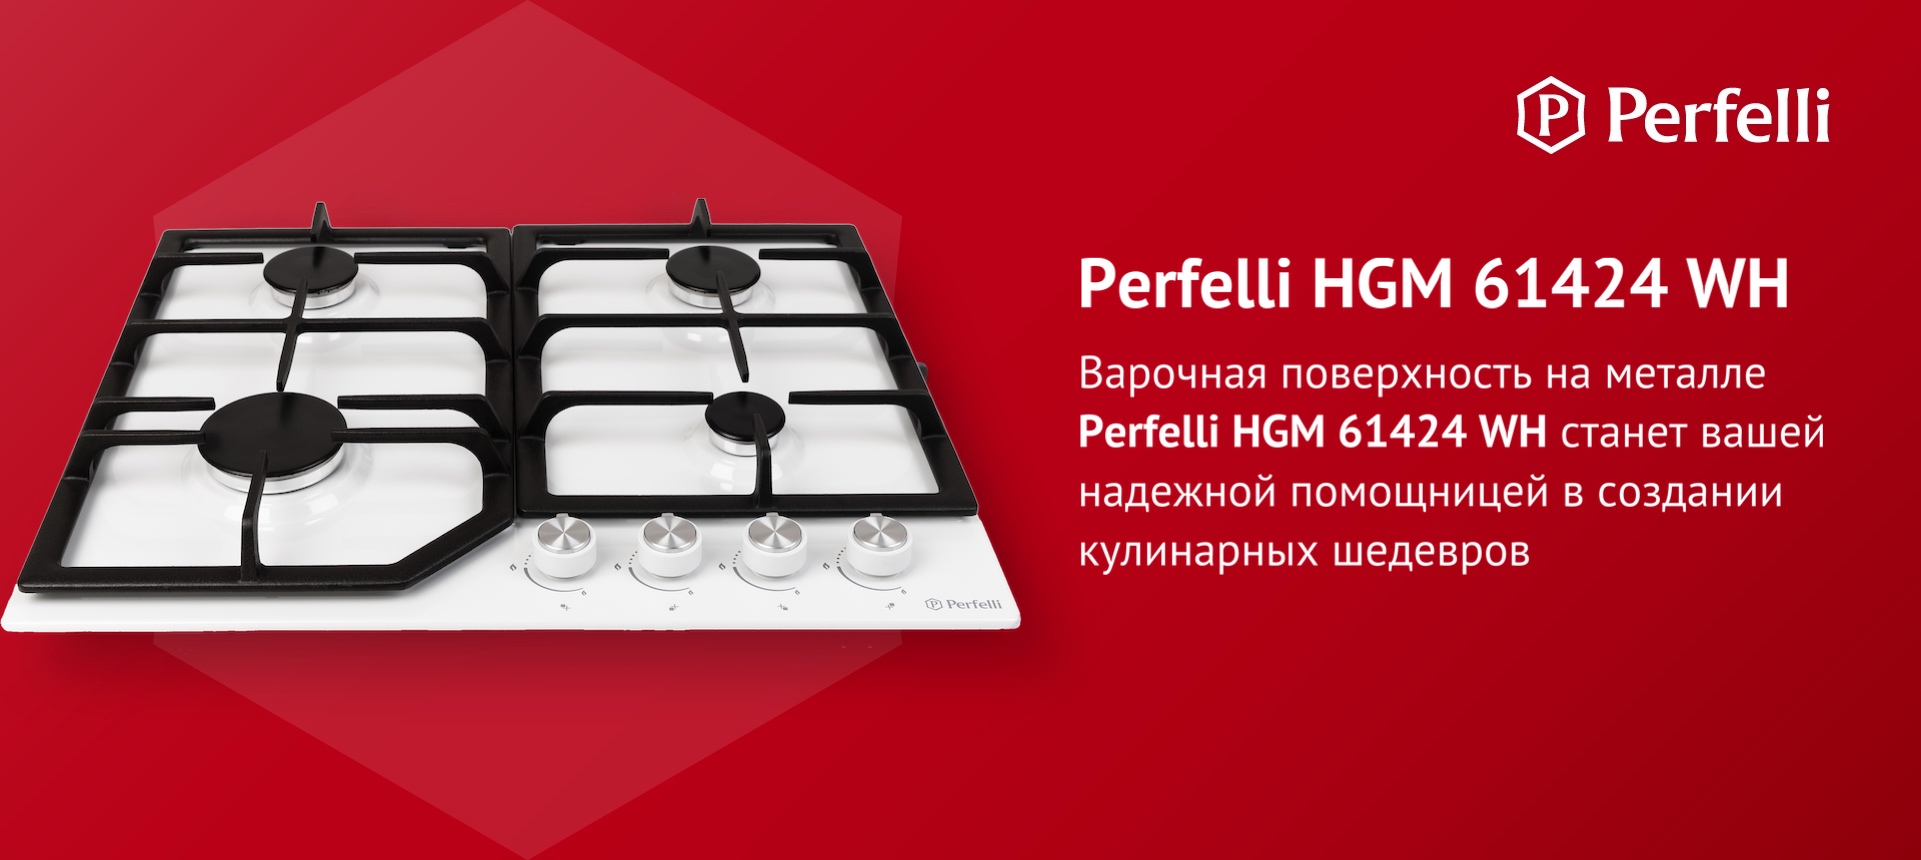 Варочная поверхность на металле Perfelli HGM 61424 WH станет вашей надежной помощницей в создании кулинарных шедевров